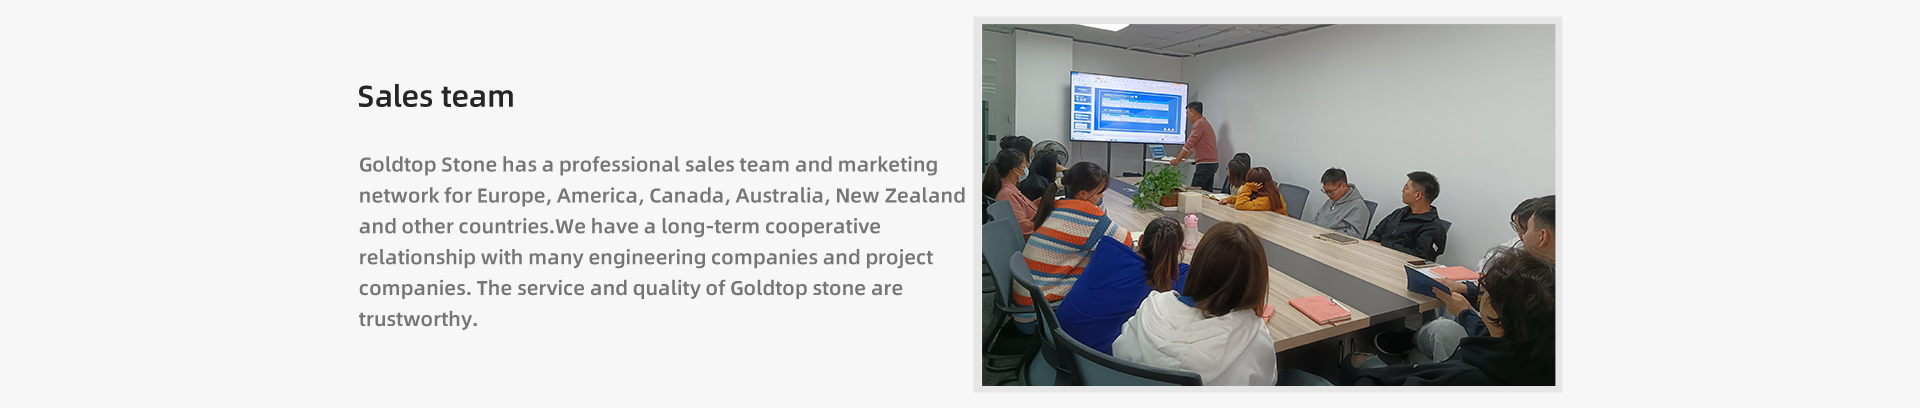 Goldtop Stone має професійну команду продажів та маркетингову мережу для Європи, Америки, Канади, Австралії, Нової Зеландії та інших країн. Ми маємо довгострокові відносини співпраці з багатьма інжиніринговими компаніями та проектними компаніями. Сервіс і якість каменю Goldtop заслуговують на довіру.